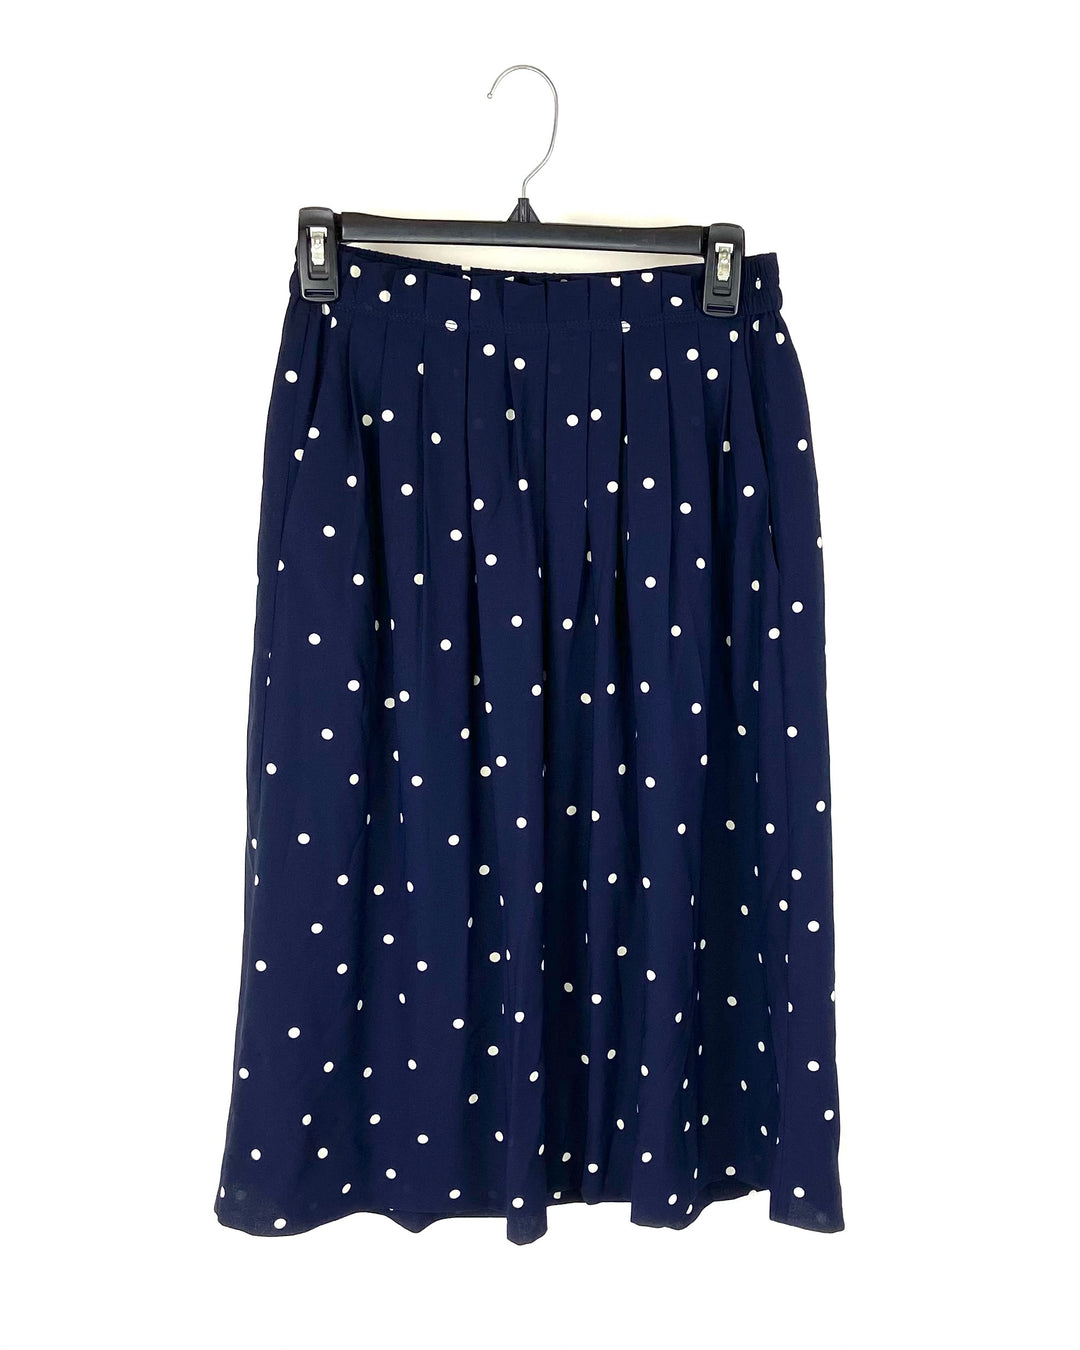 Navy Blue Polka Dot Skirt - Size 0